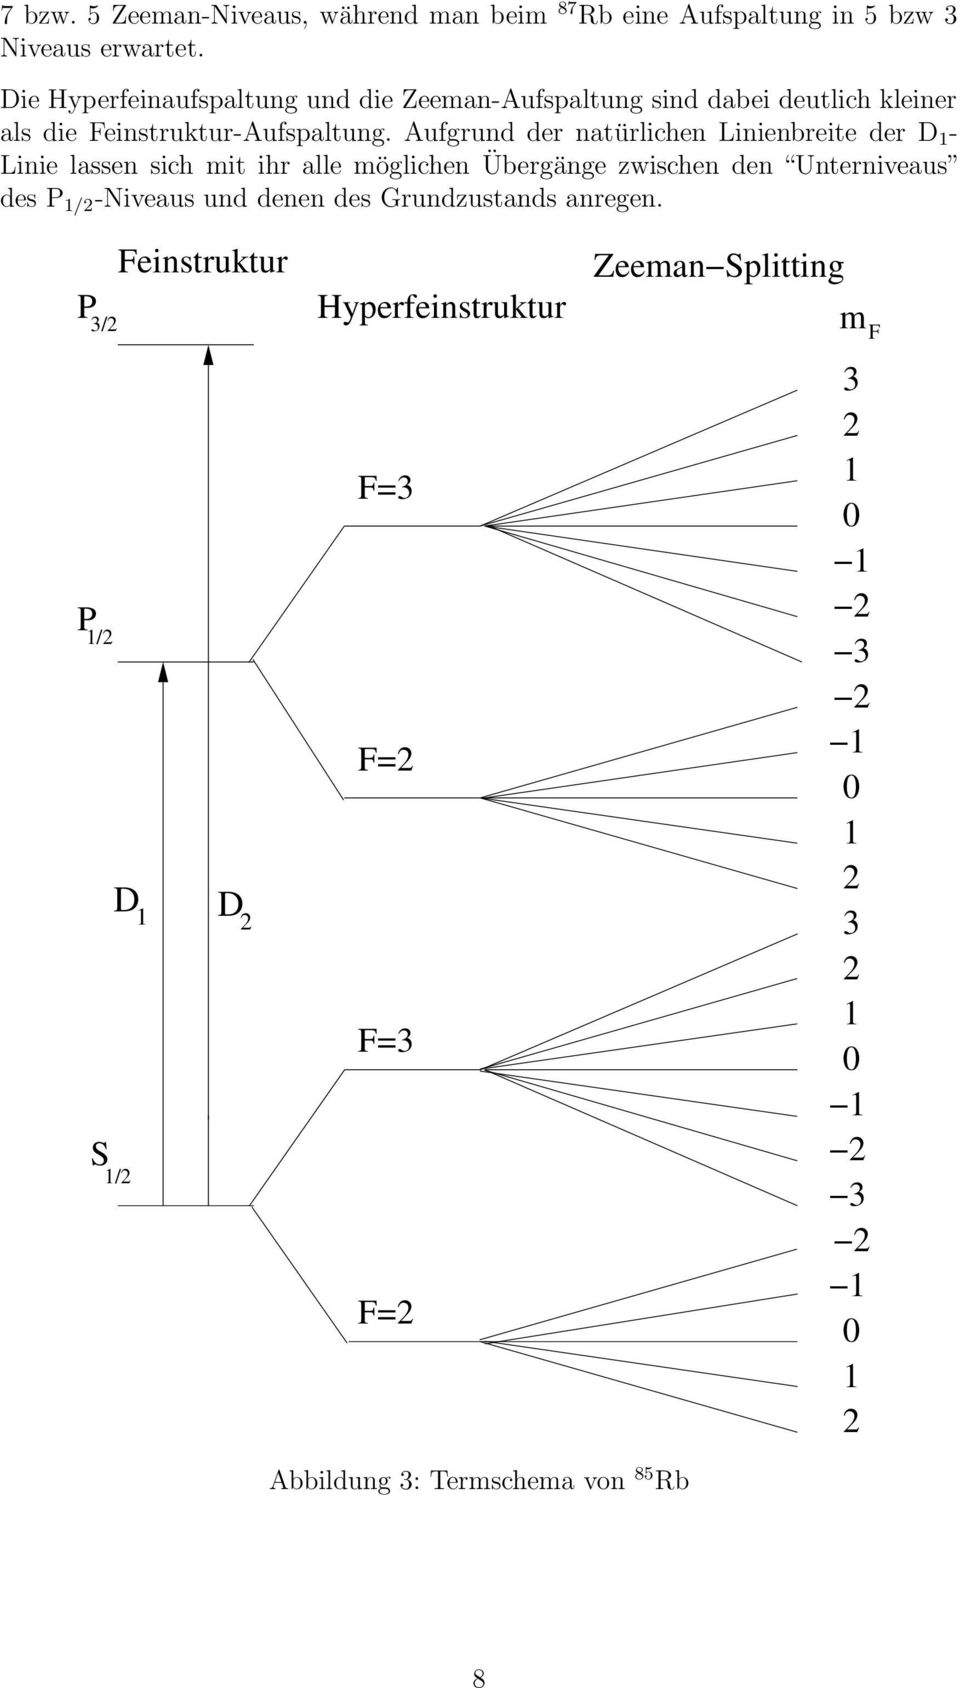 Aufgrund der natürlichen Linienbreite der D 1 - Linie lassen sich mit ihr alle möglichen Übergänge zwischen den Unterniveaus des P 1/2